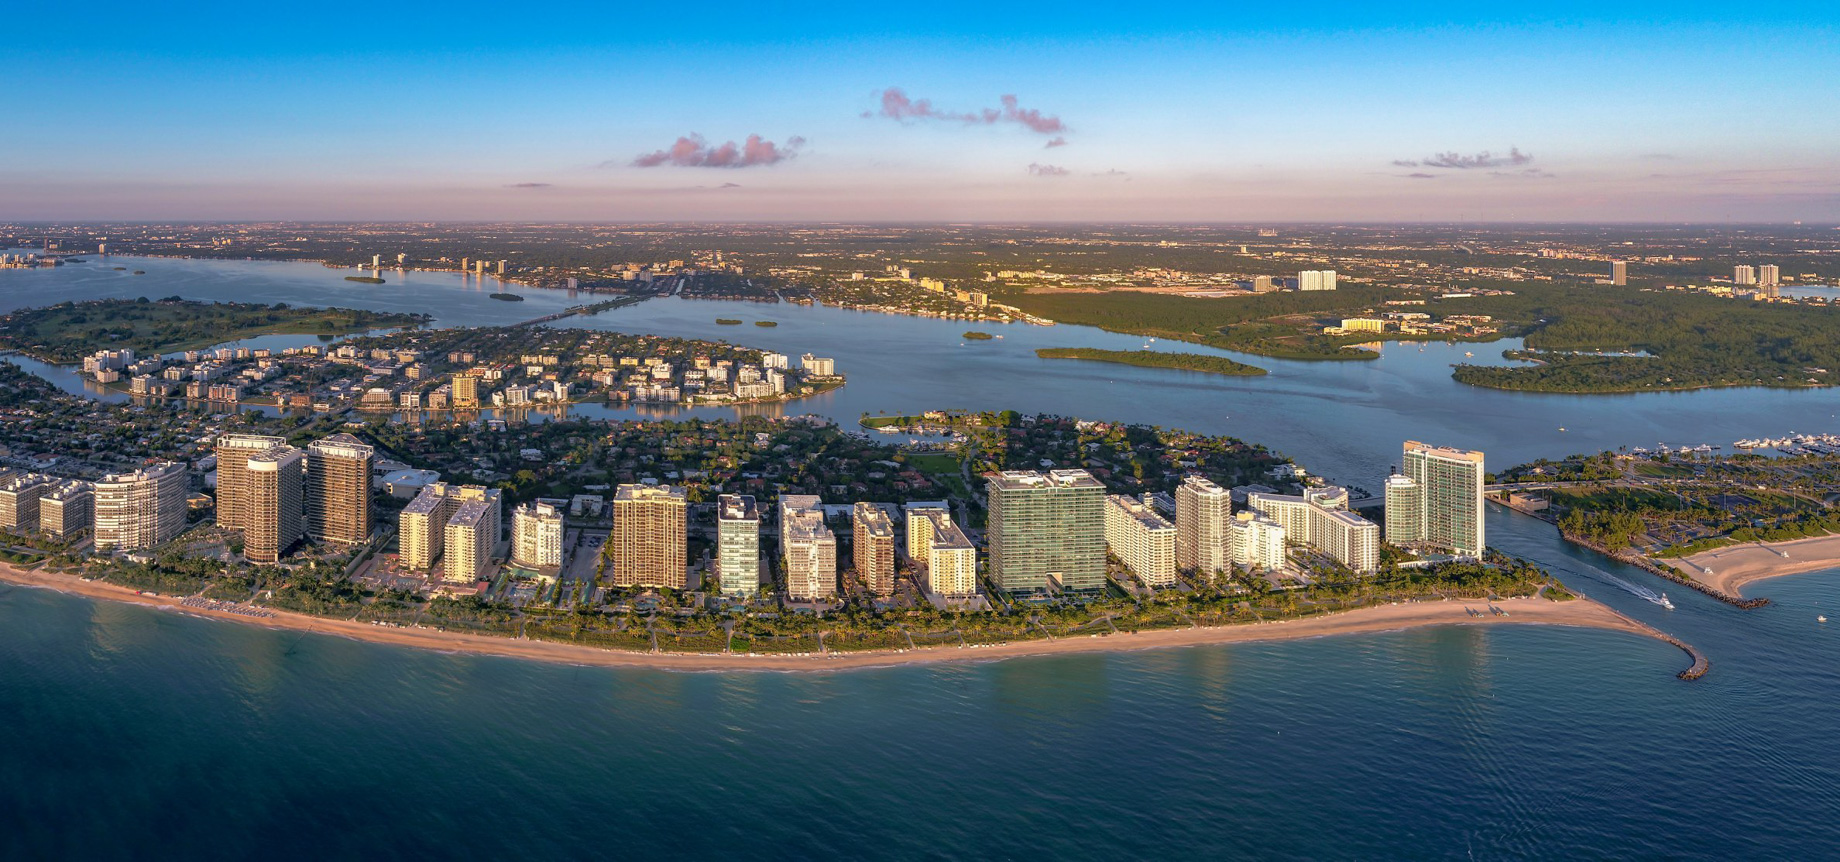 The Ritz-Carlton Bal Harbour, Miami Resort – Bal Harbour, FL, USA – Beach Aerial View